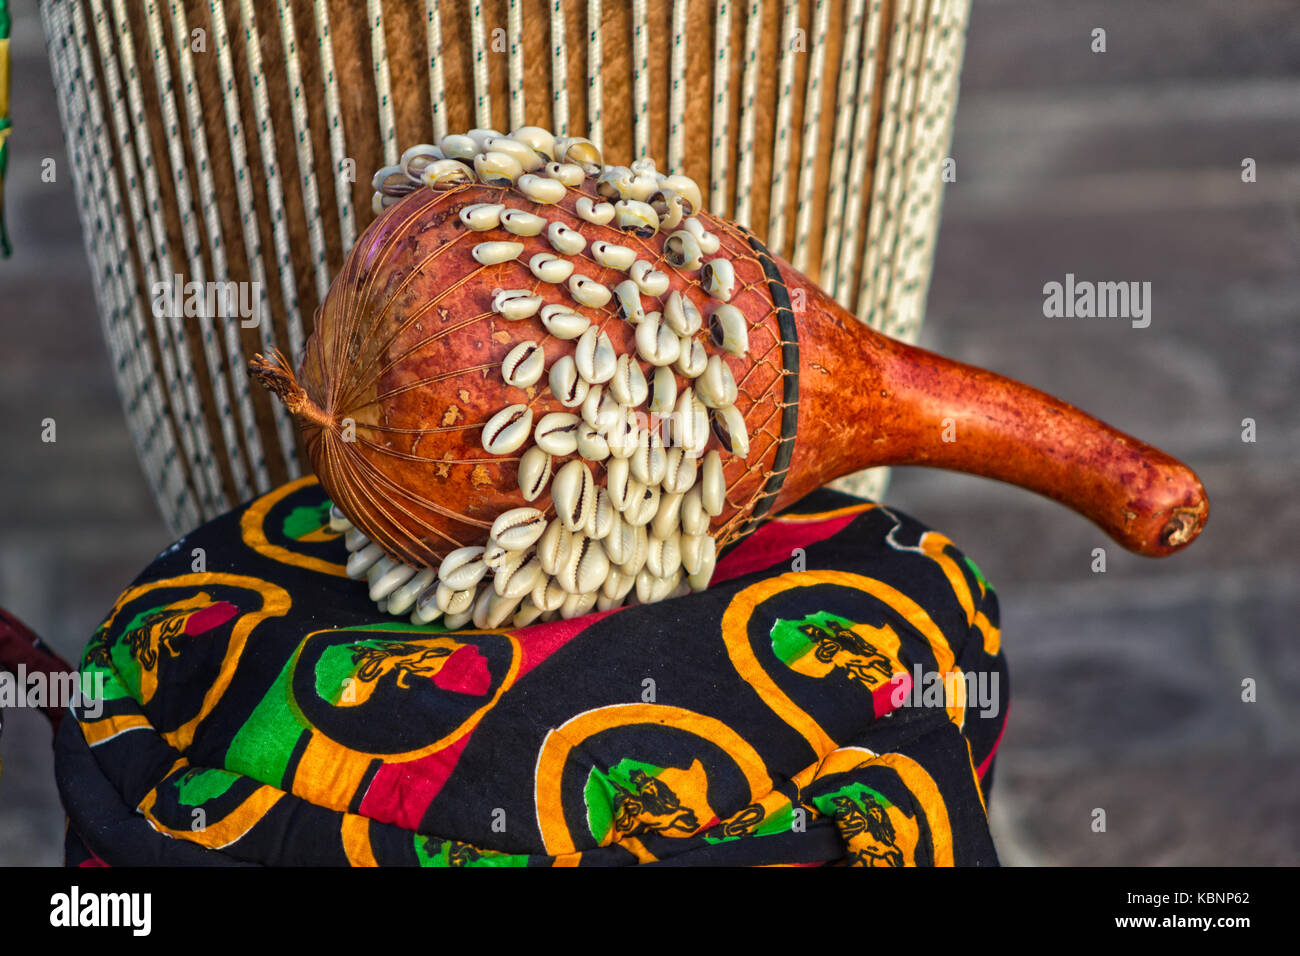 Tambor africano de Ghana SHEKERE (instrumento de percusión africana de Ghana. También conocido como Axatse). Foto de stock